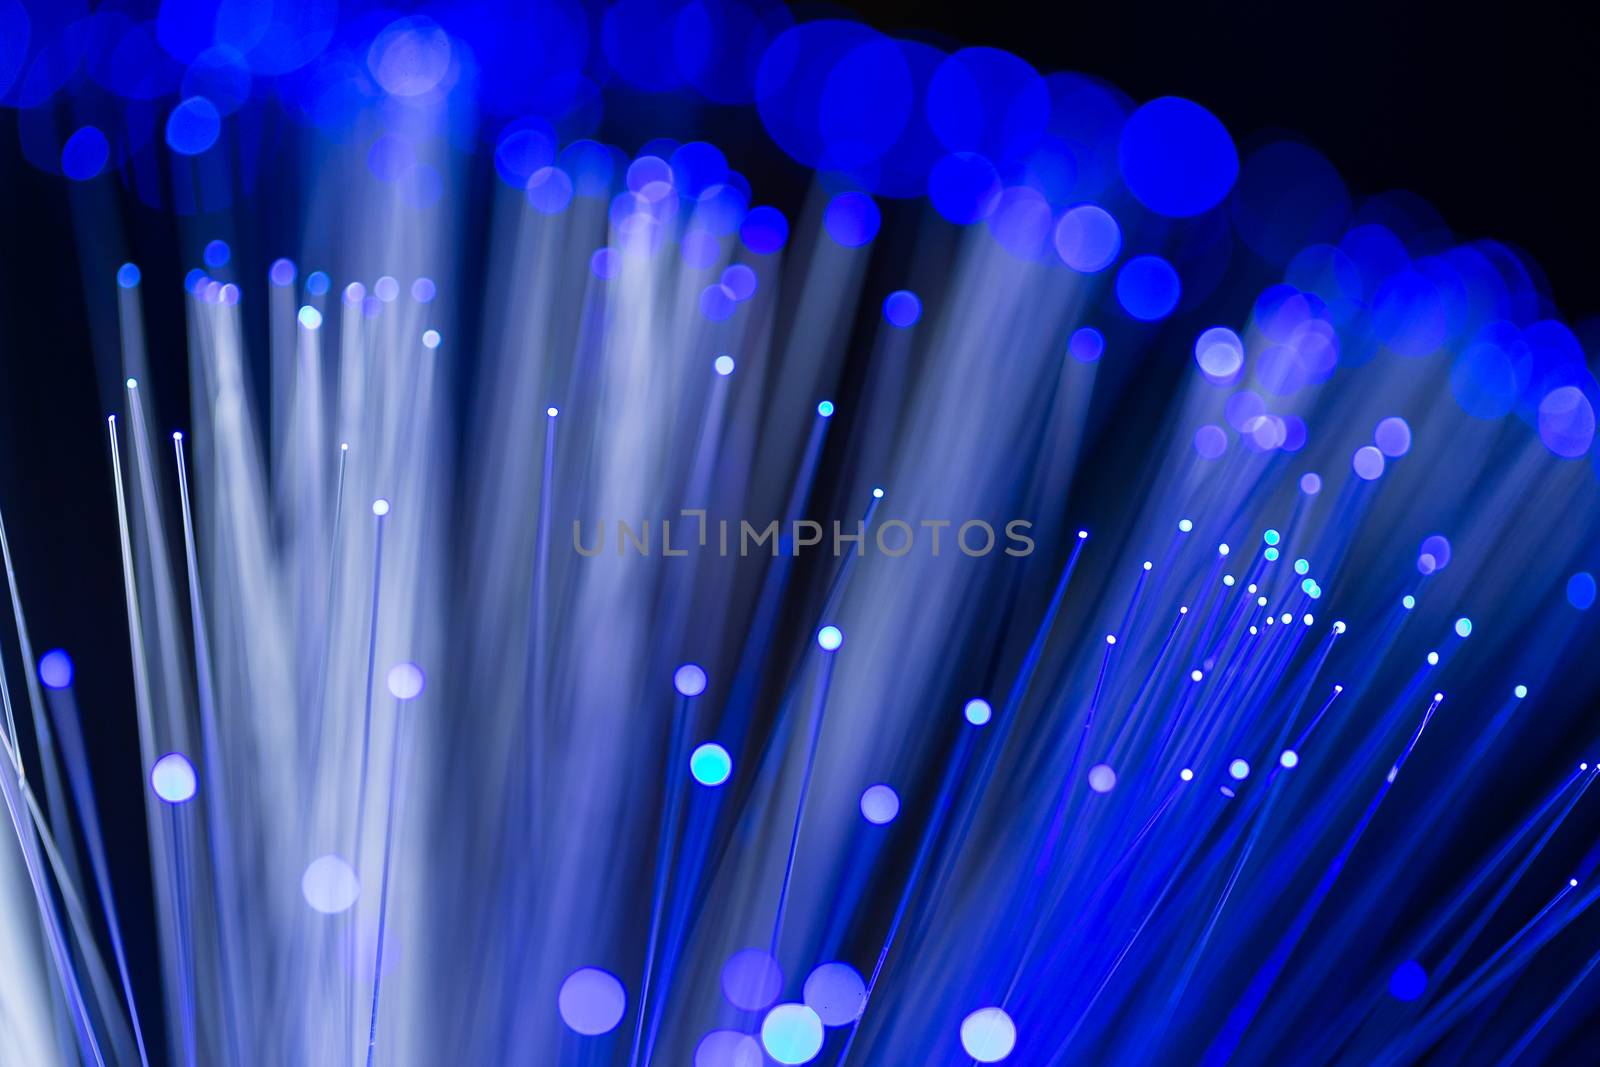 Fiber optics cable by leungchopan